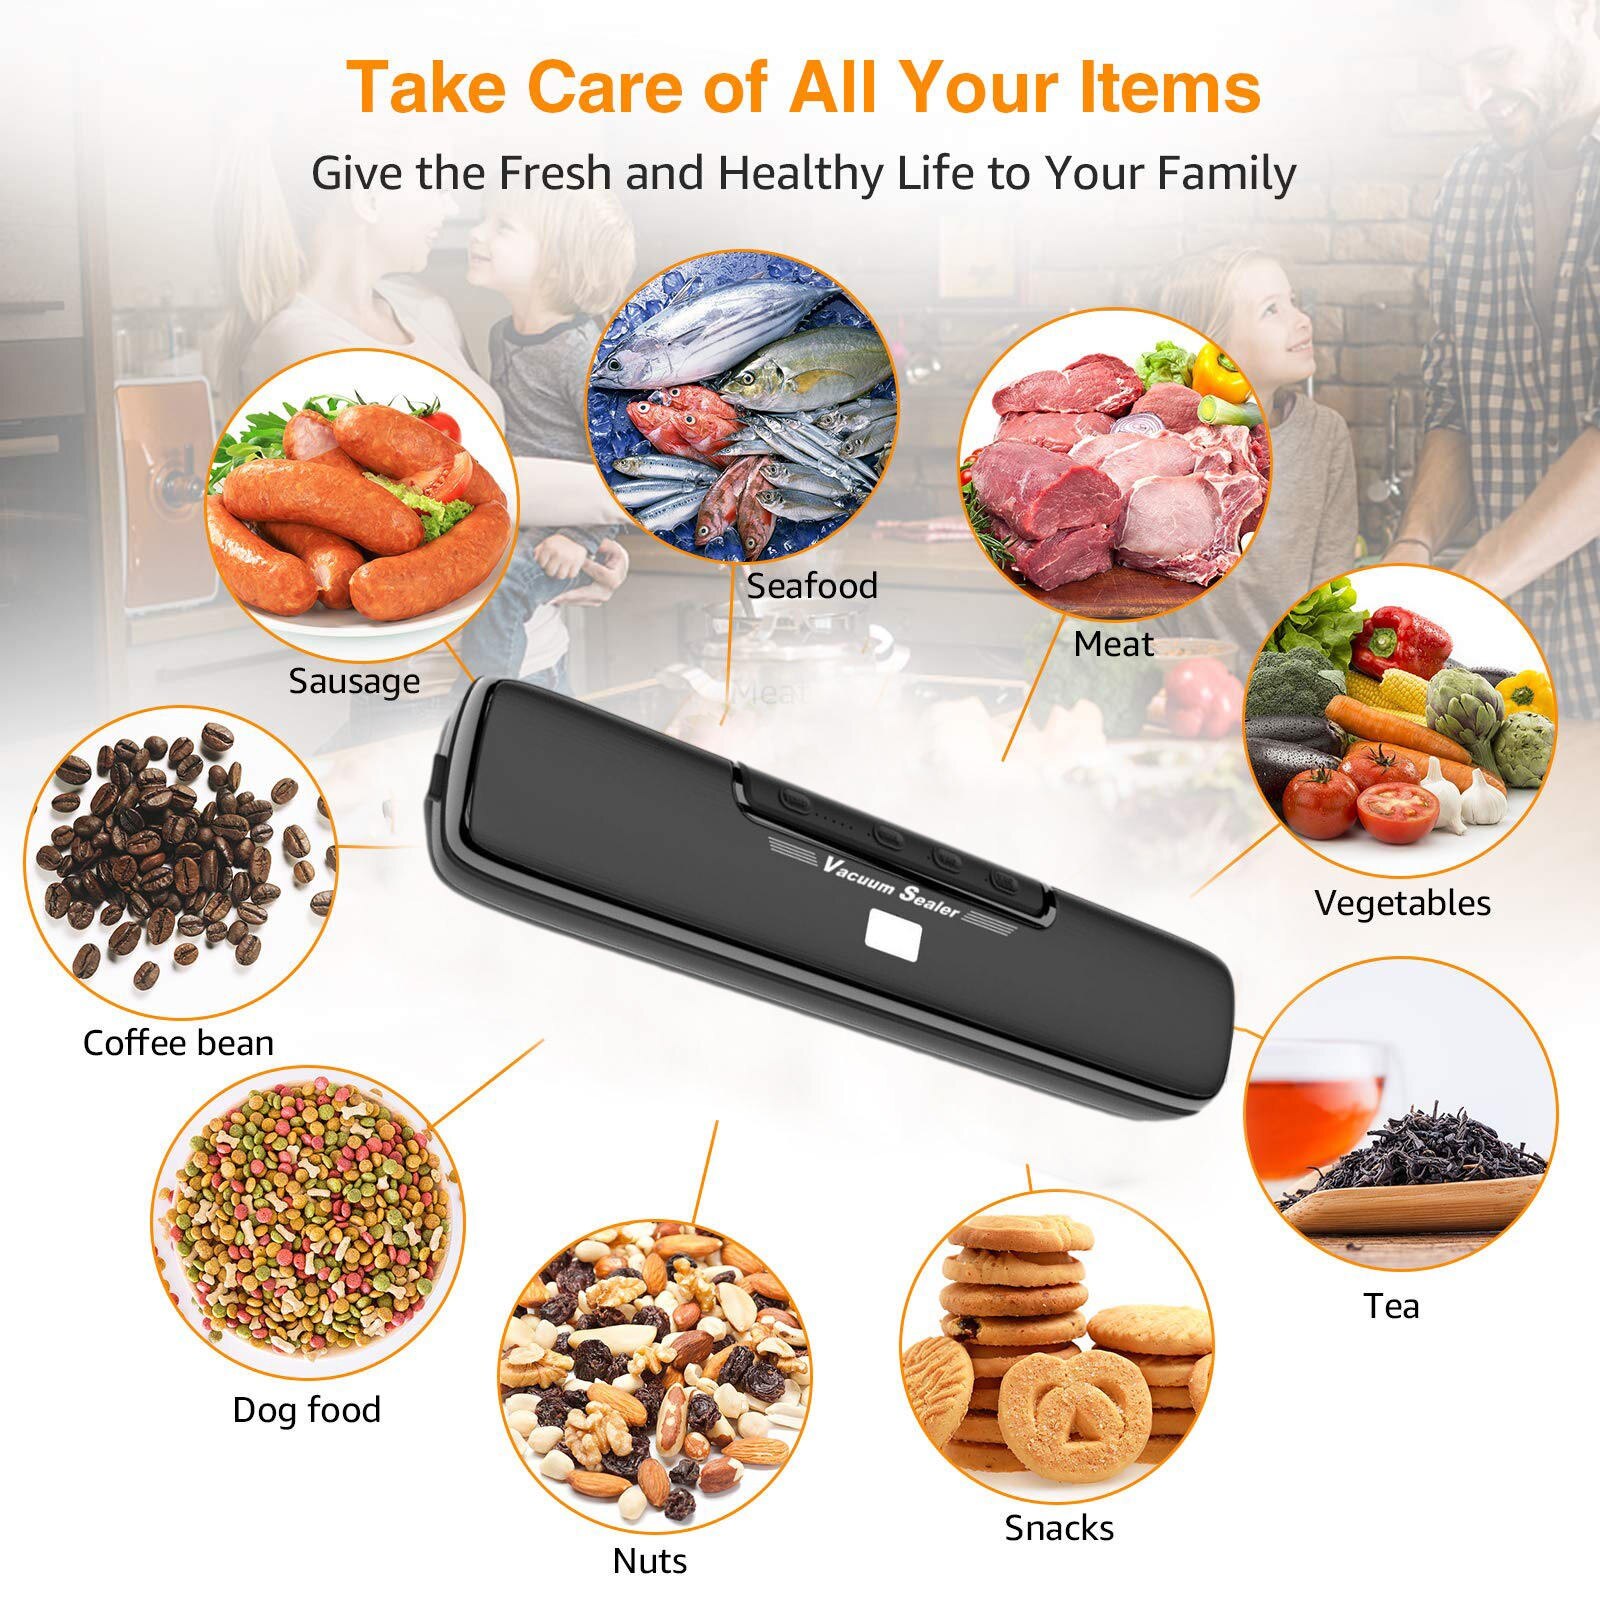 Huishoudelijke Vacuum Sealer Kan Verzegelen Voedsel Houden Voedsel Verse Automatische Commerciële Huishoudelijke Food Vacuum Sealer Verpakking # G30